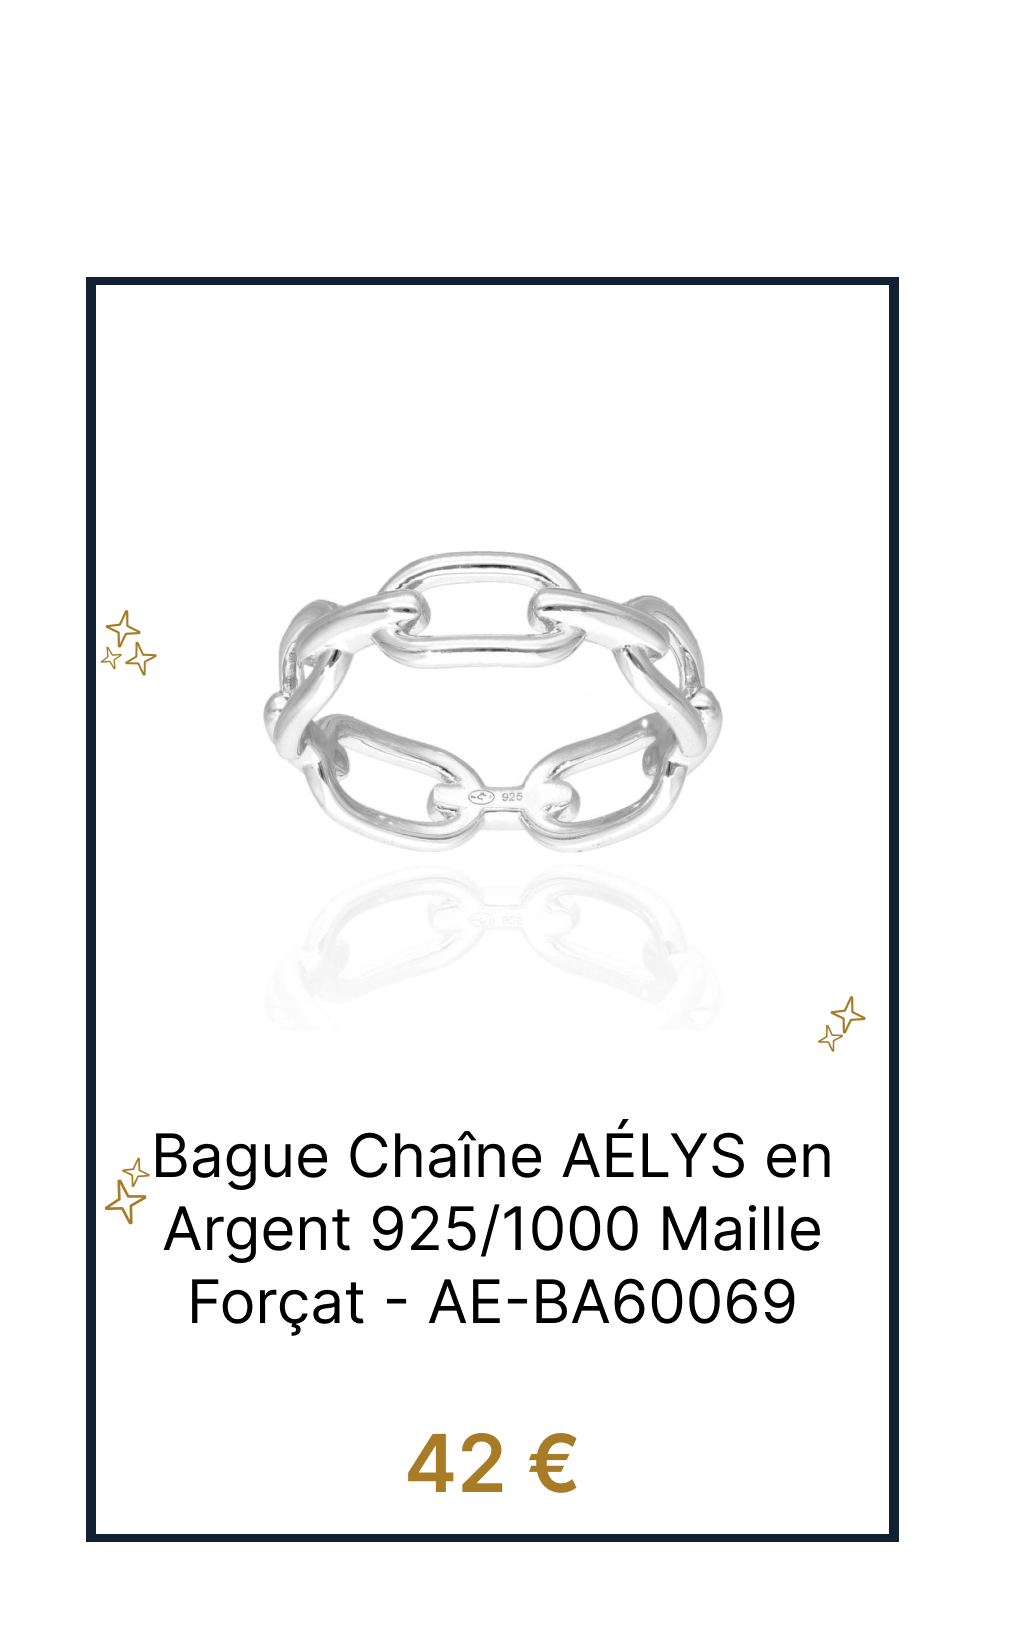 Bague Chaîne AÉLYS en Argent 925/1000 Maille Forçat - AE-BA60069